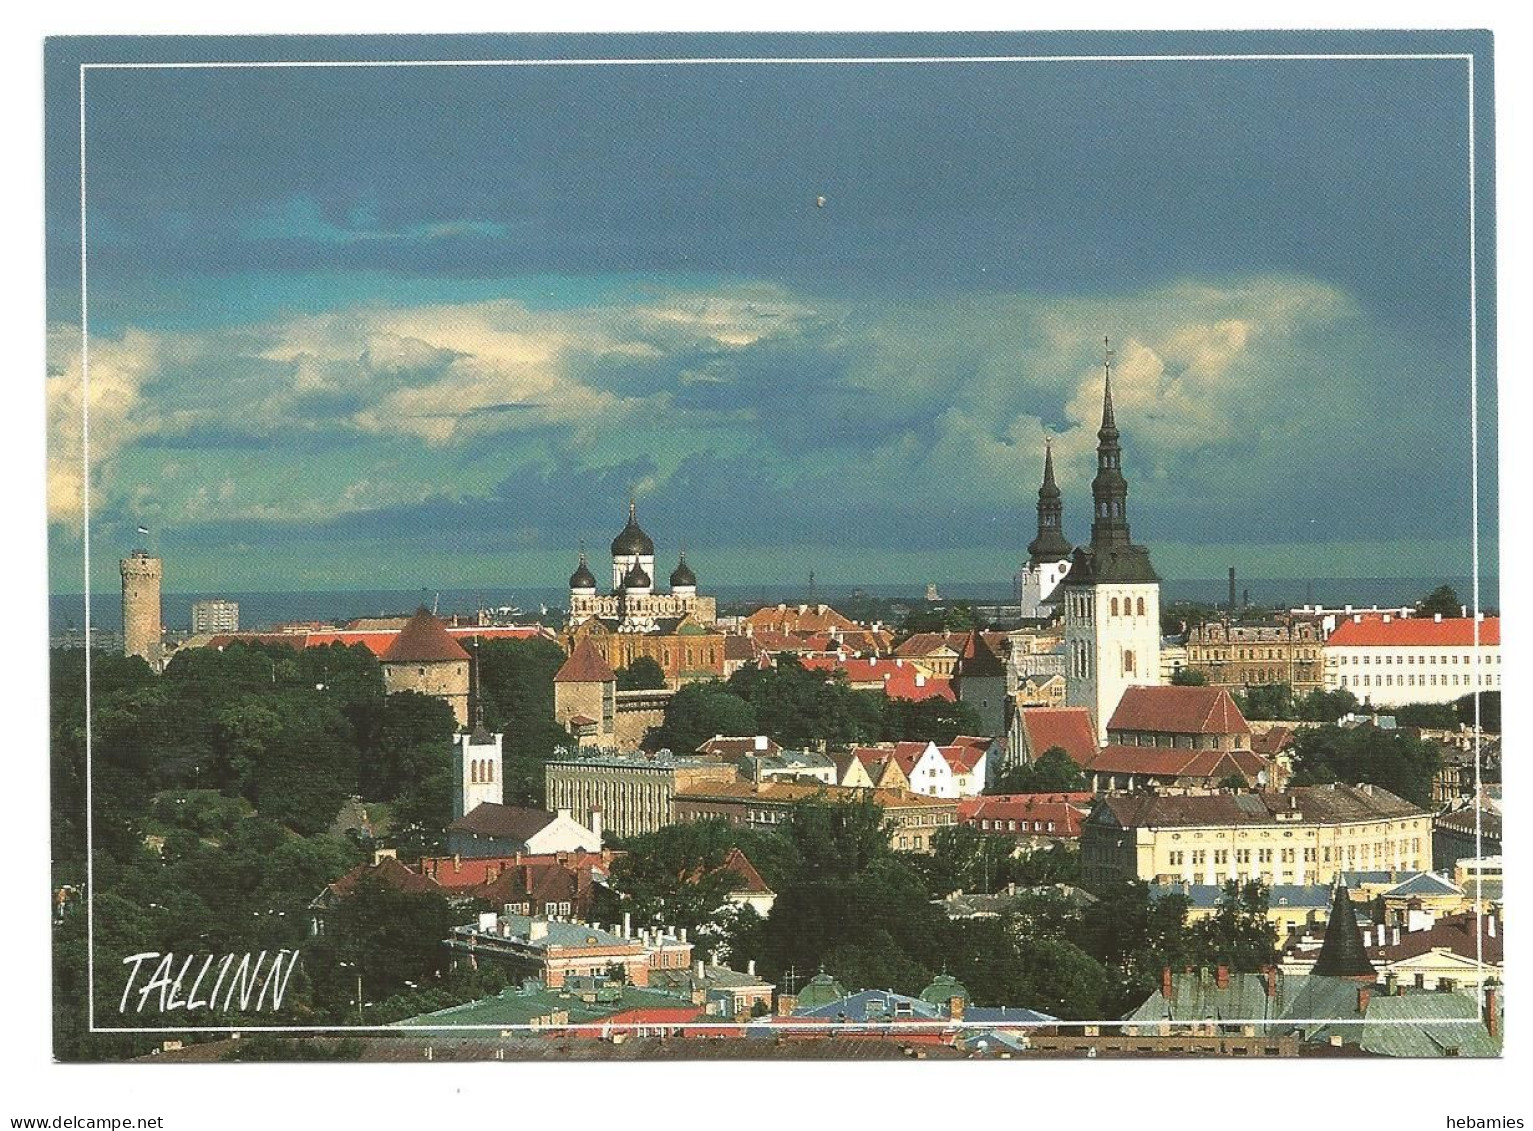 TALLINN - OLD TOWN - VANALINN - ESTONIA - EESTI - - Estonia